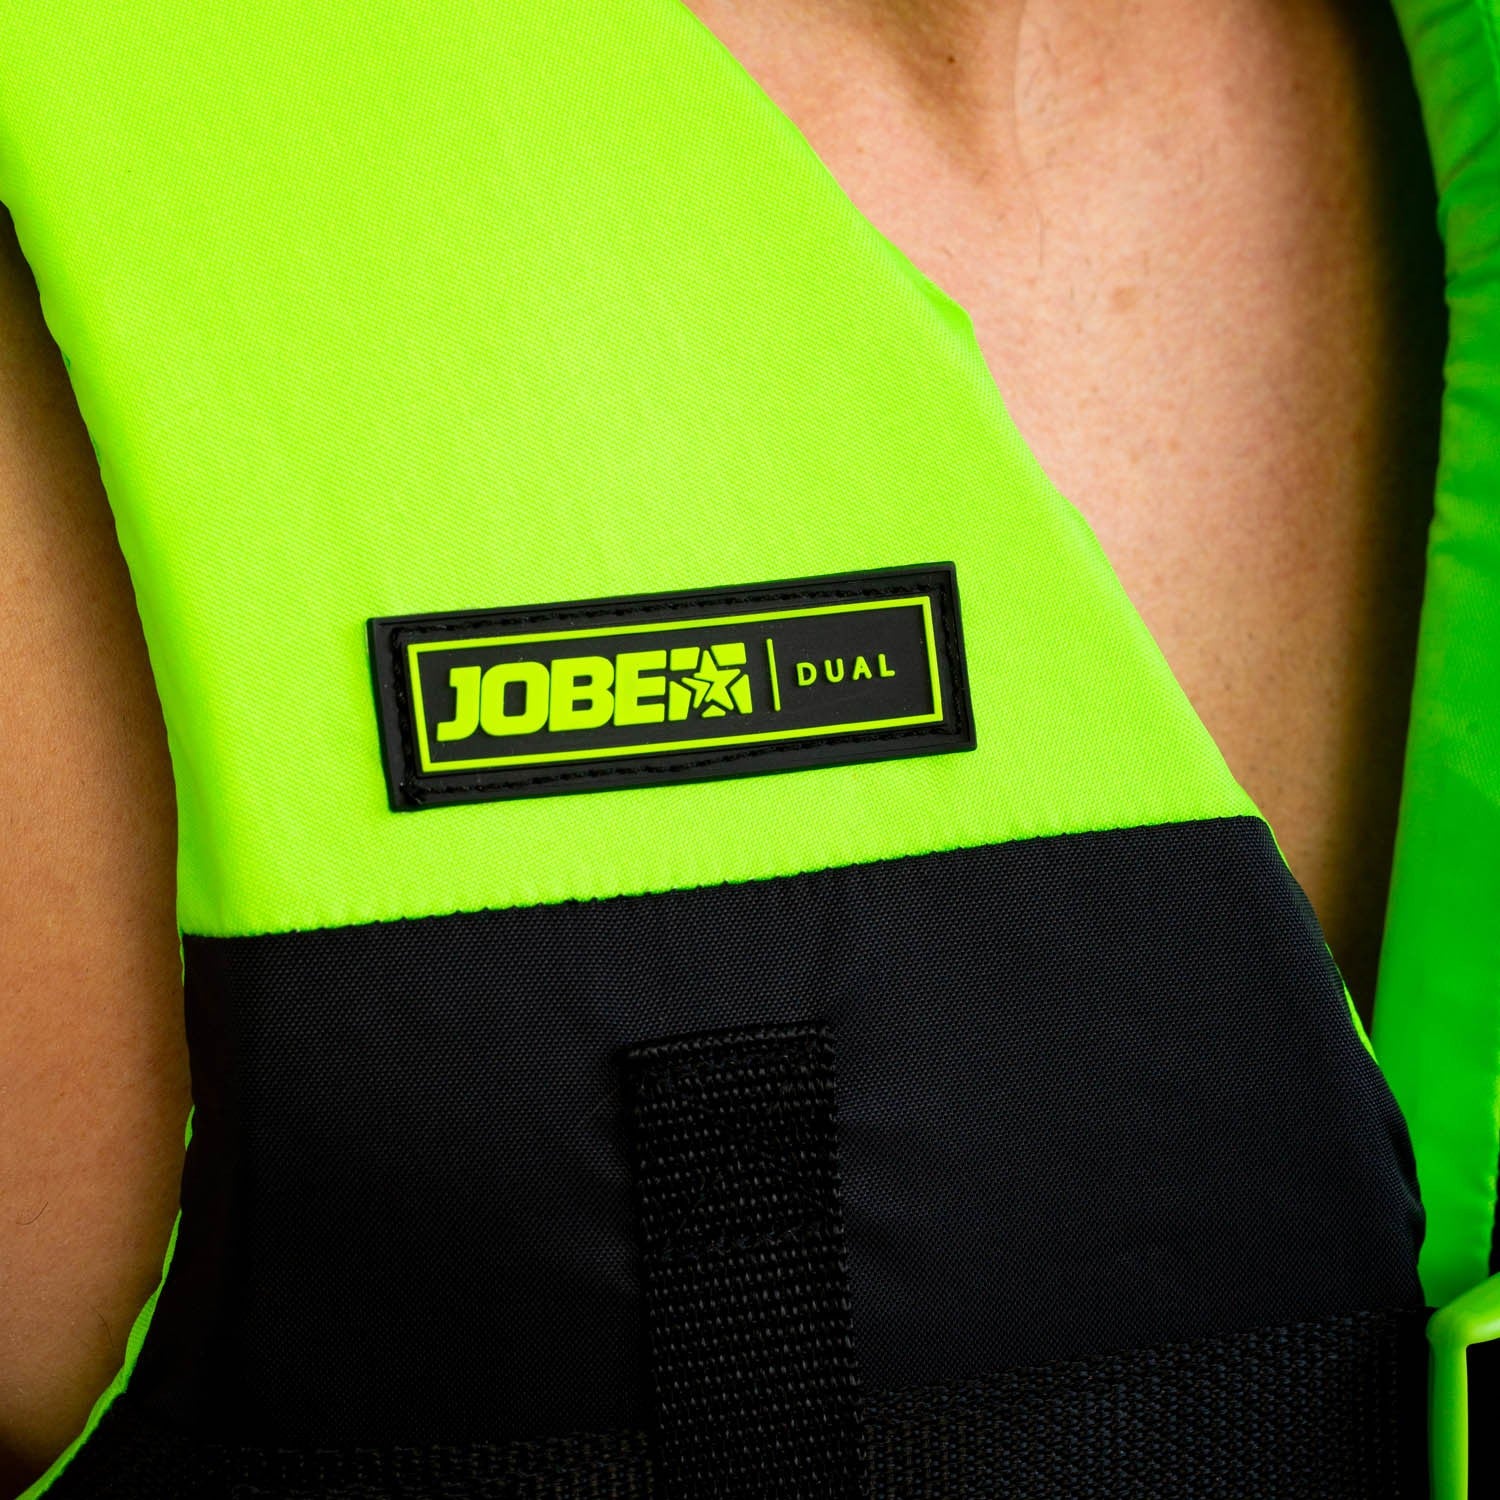 Life jacket for kids Jobe Nylon Life Vest, lime green 244823007